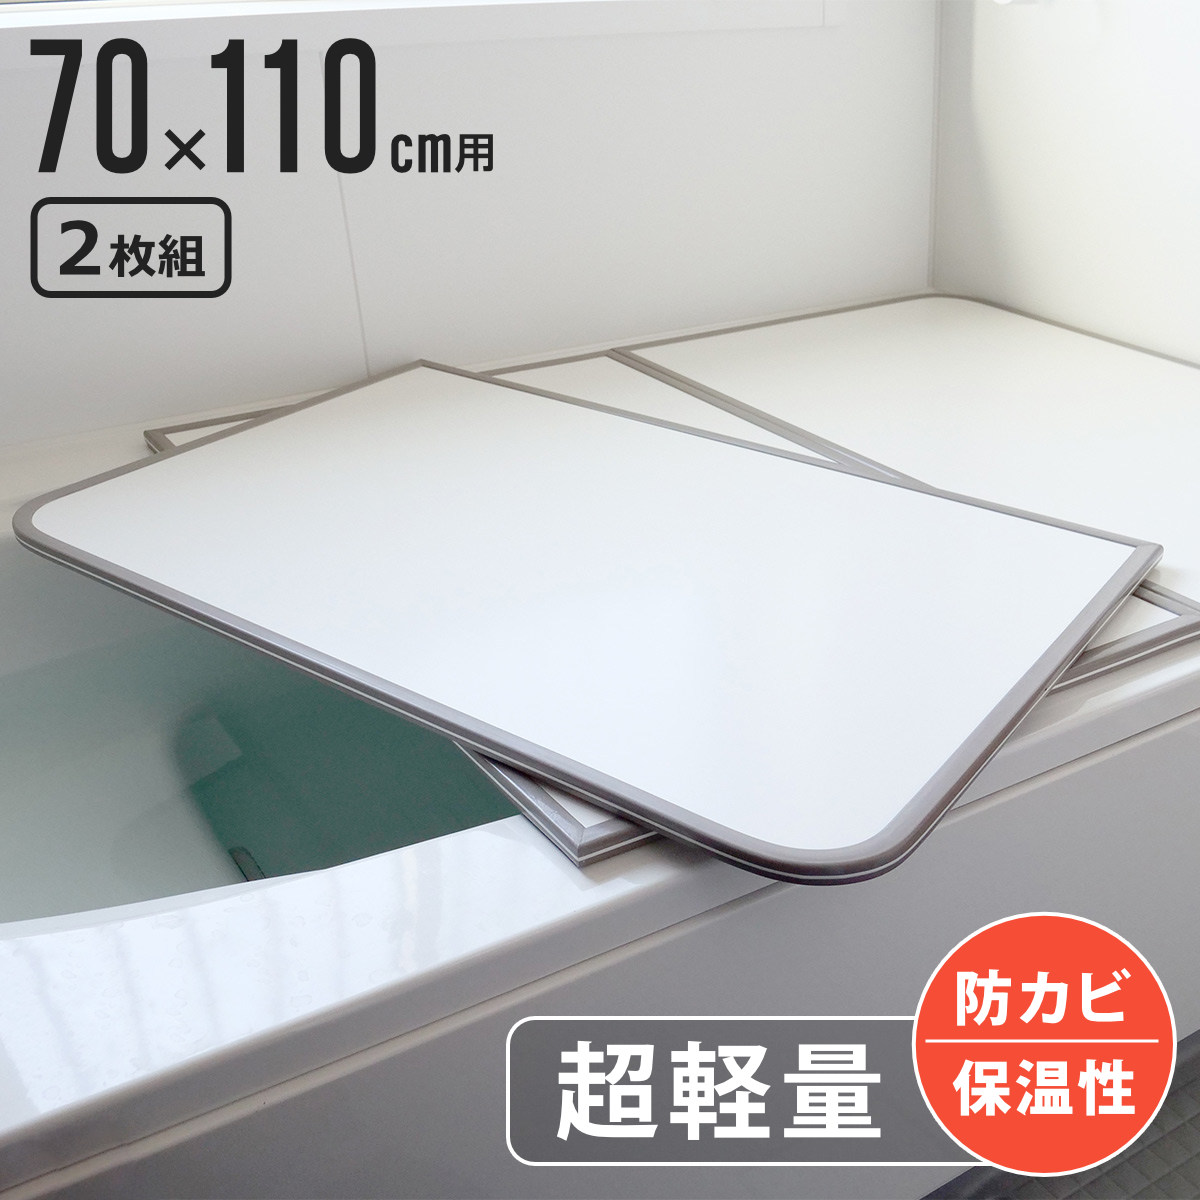  風呂ふた 組み合わせ 軽量 カビの生えにくい風呂ふた M-11 70×110cm 実寸68×108cm 2枚組